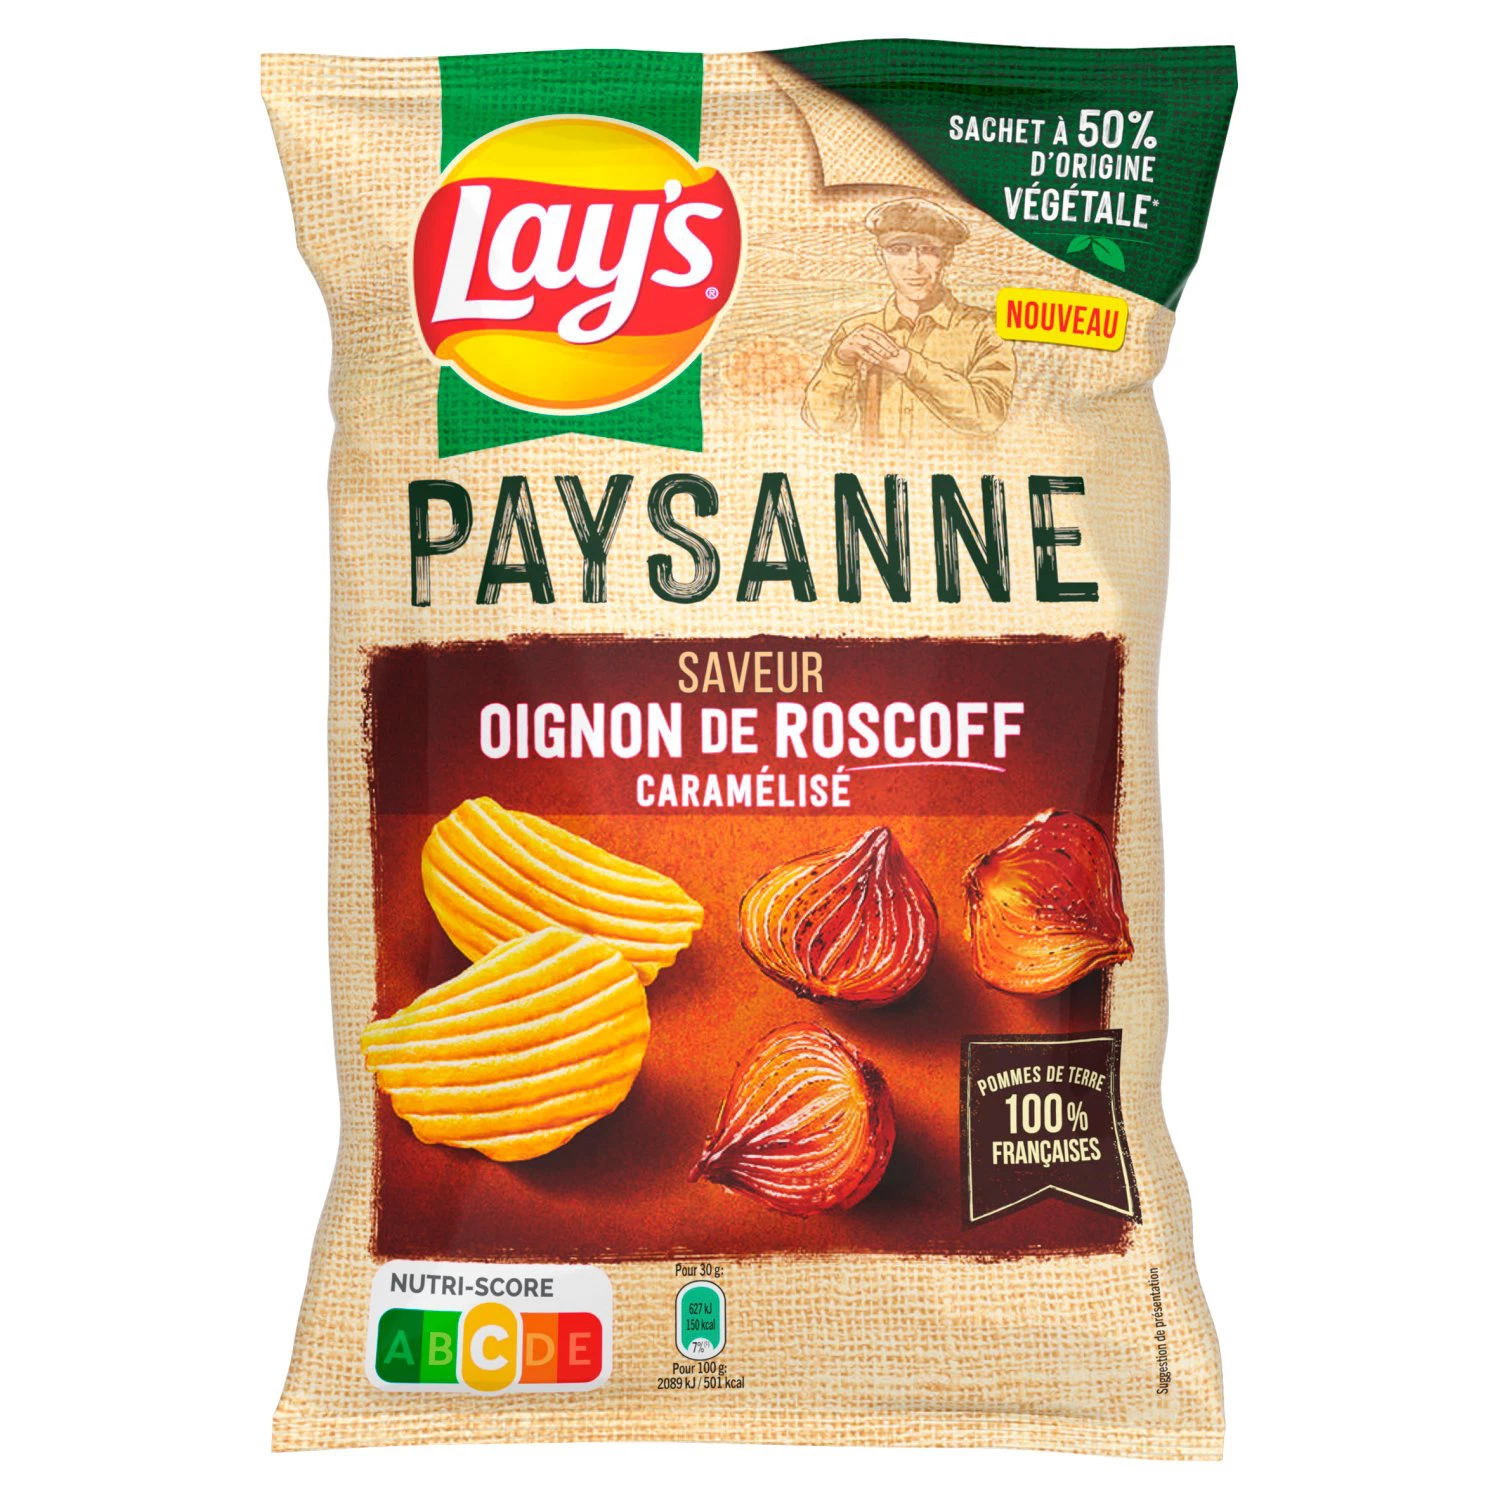 Receita Camponesa Chips Sabor Cebola Caramelizada Roscoff, 120g - LAY'S